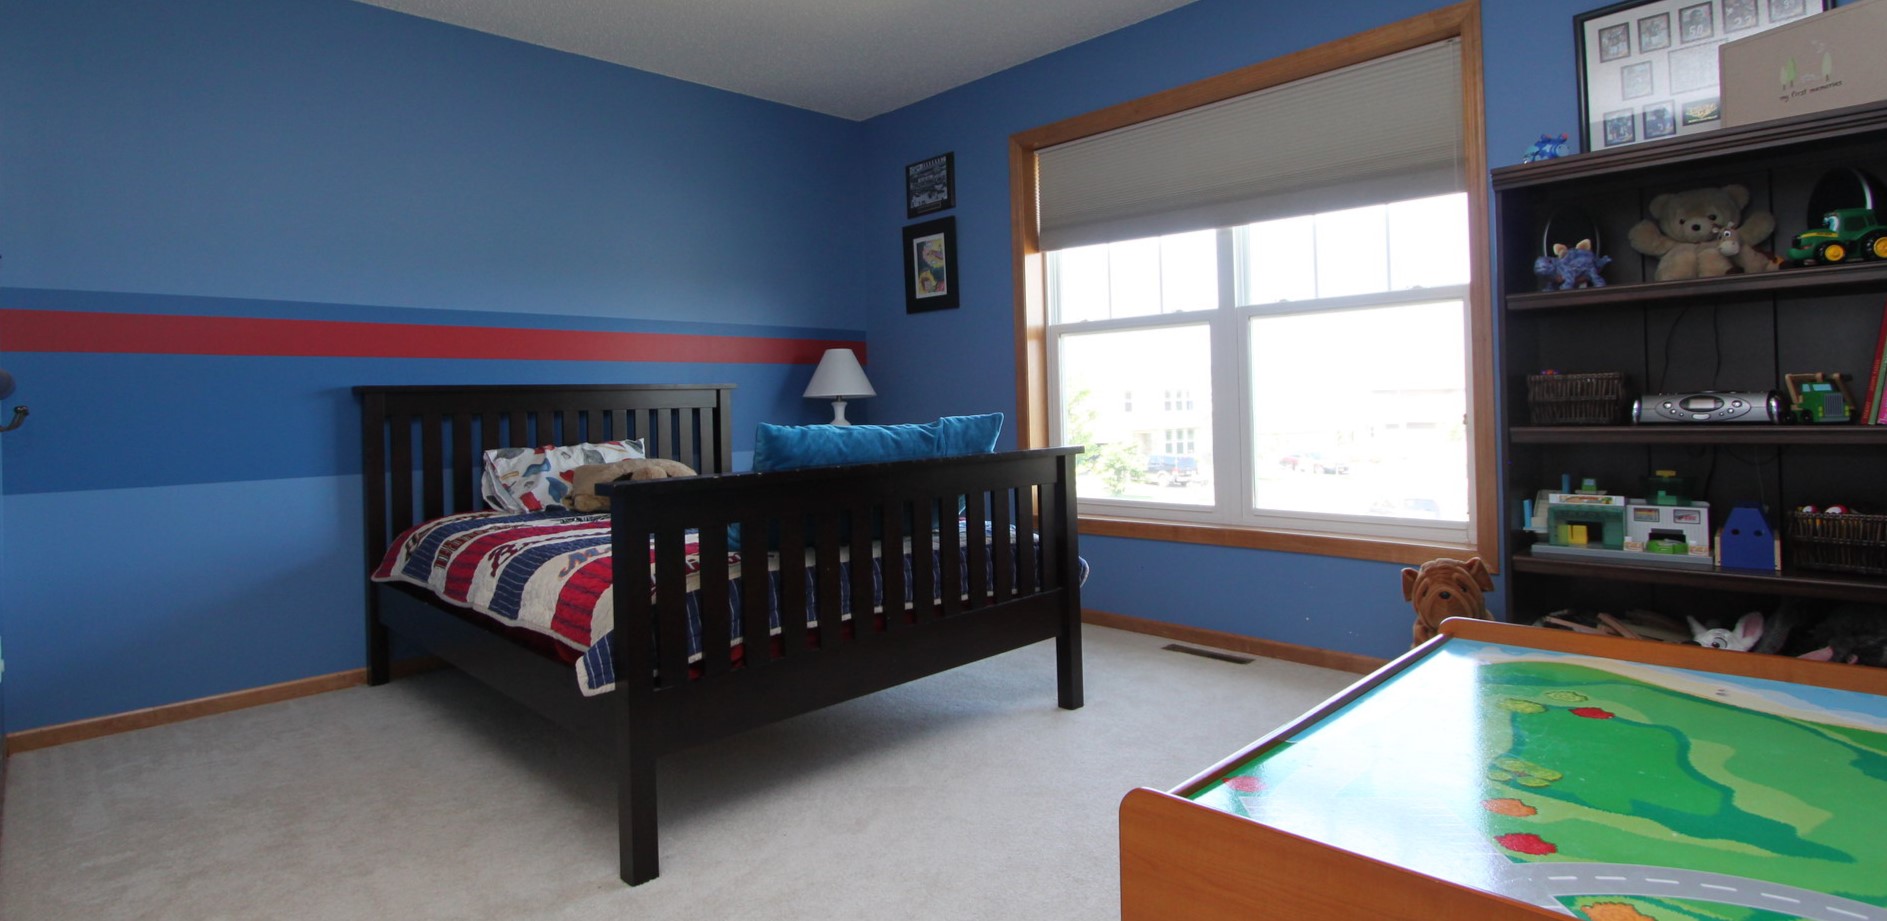 Стены в комнате мальчика можно покрасить в синий цвет